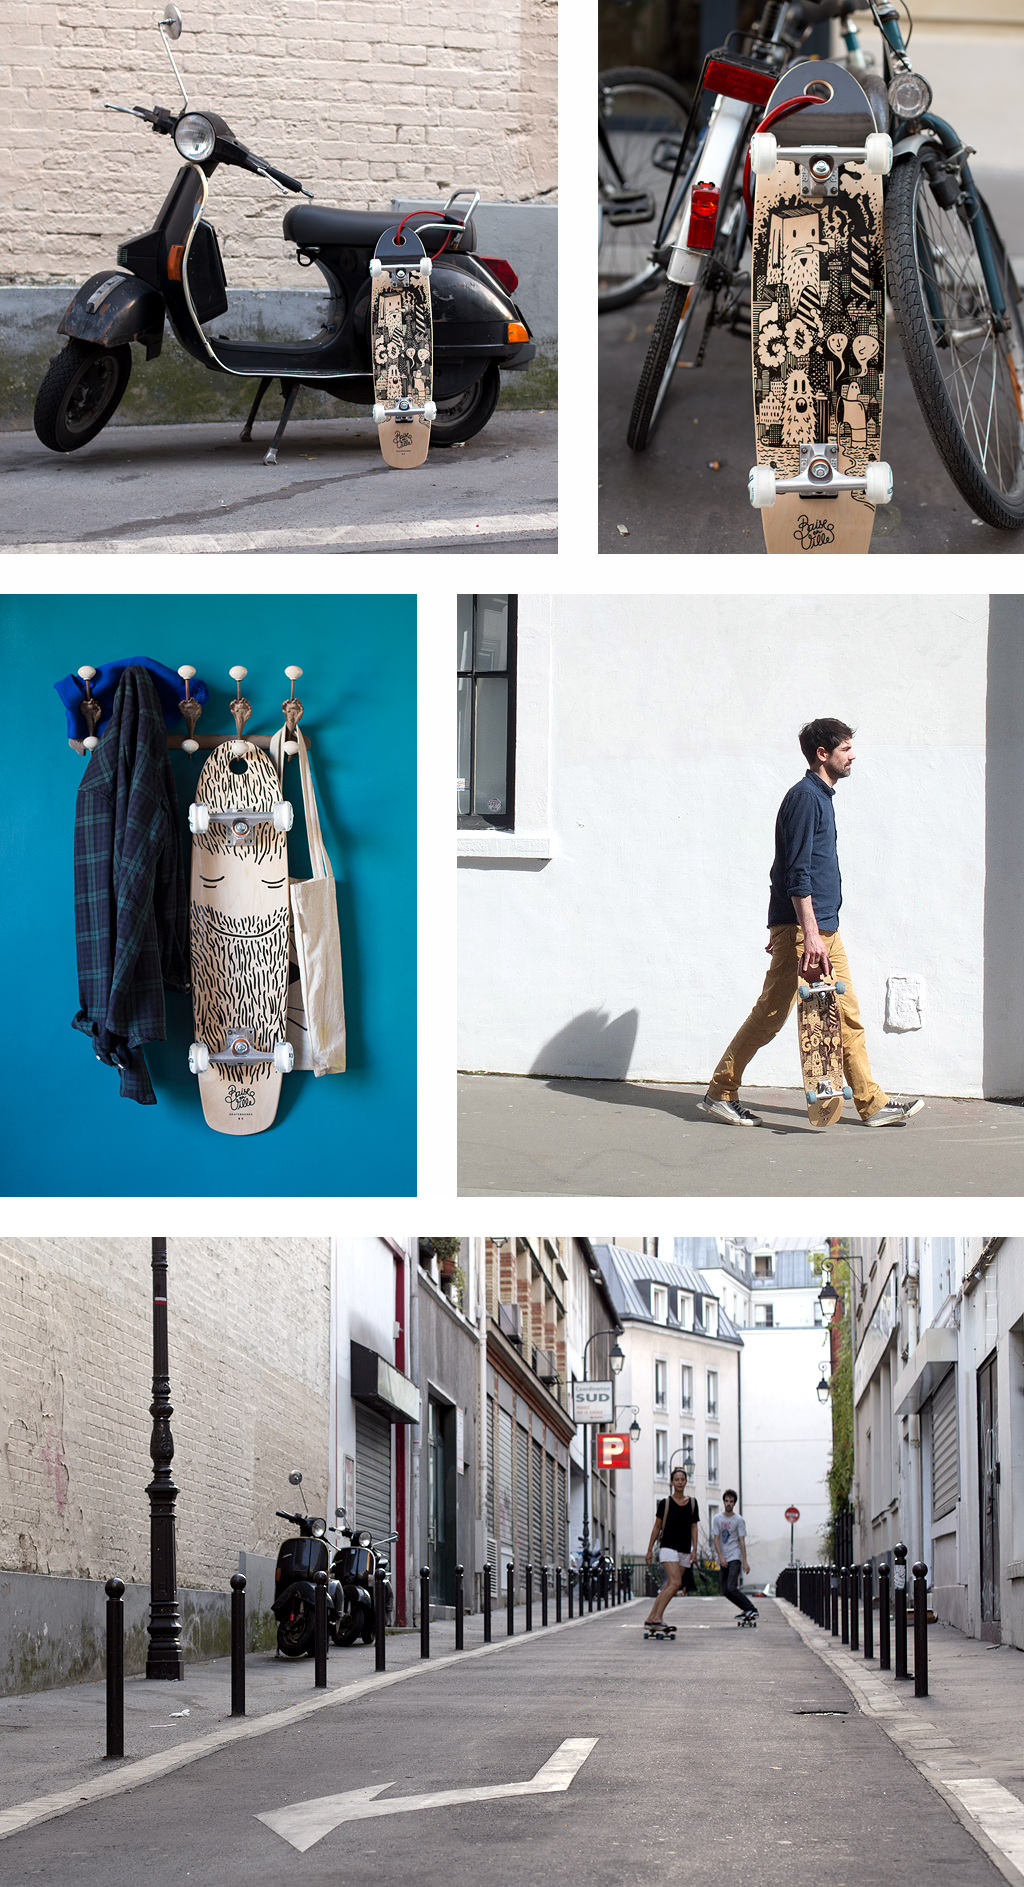 Baise en ville skateboards par Laurent Pierre